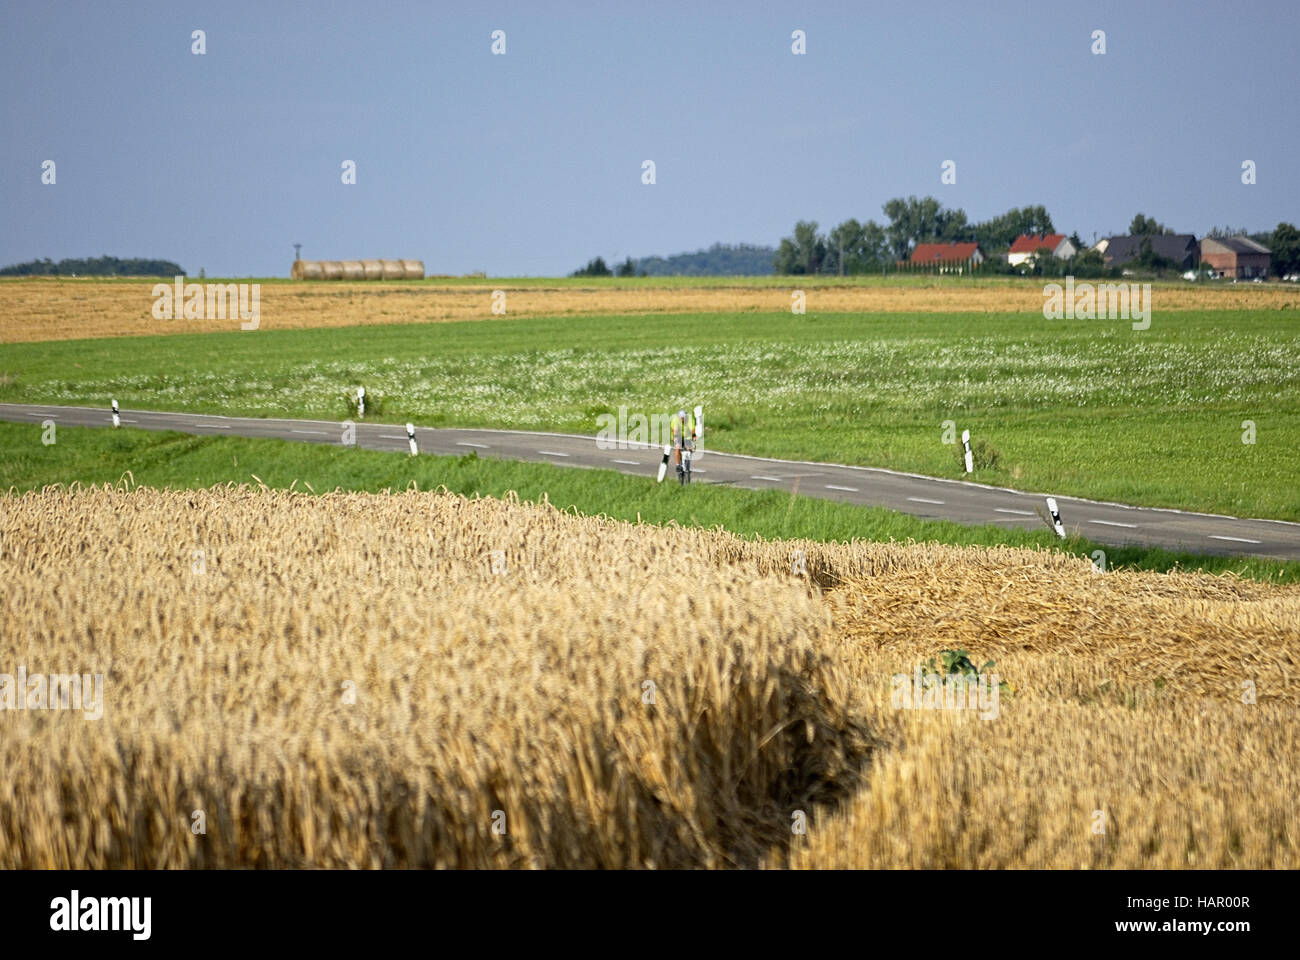 Felder+Wiesen - fields+meadows Stock Photo